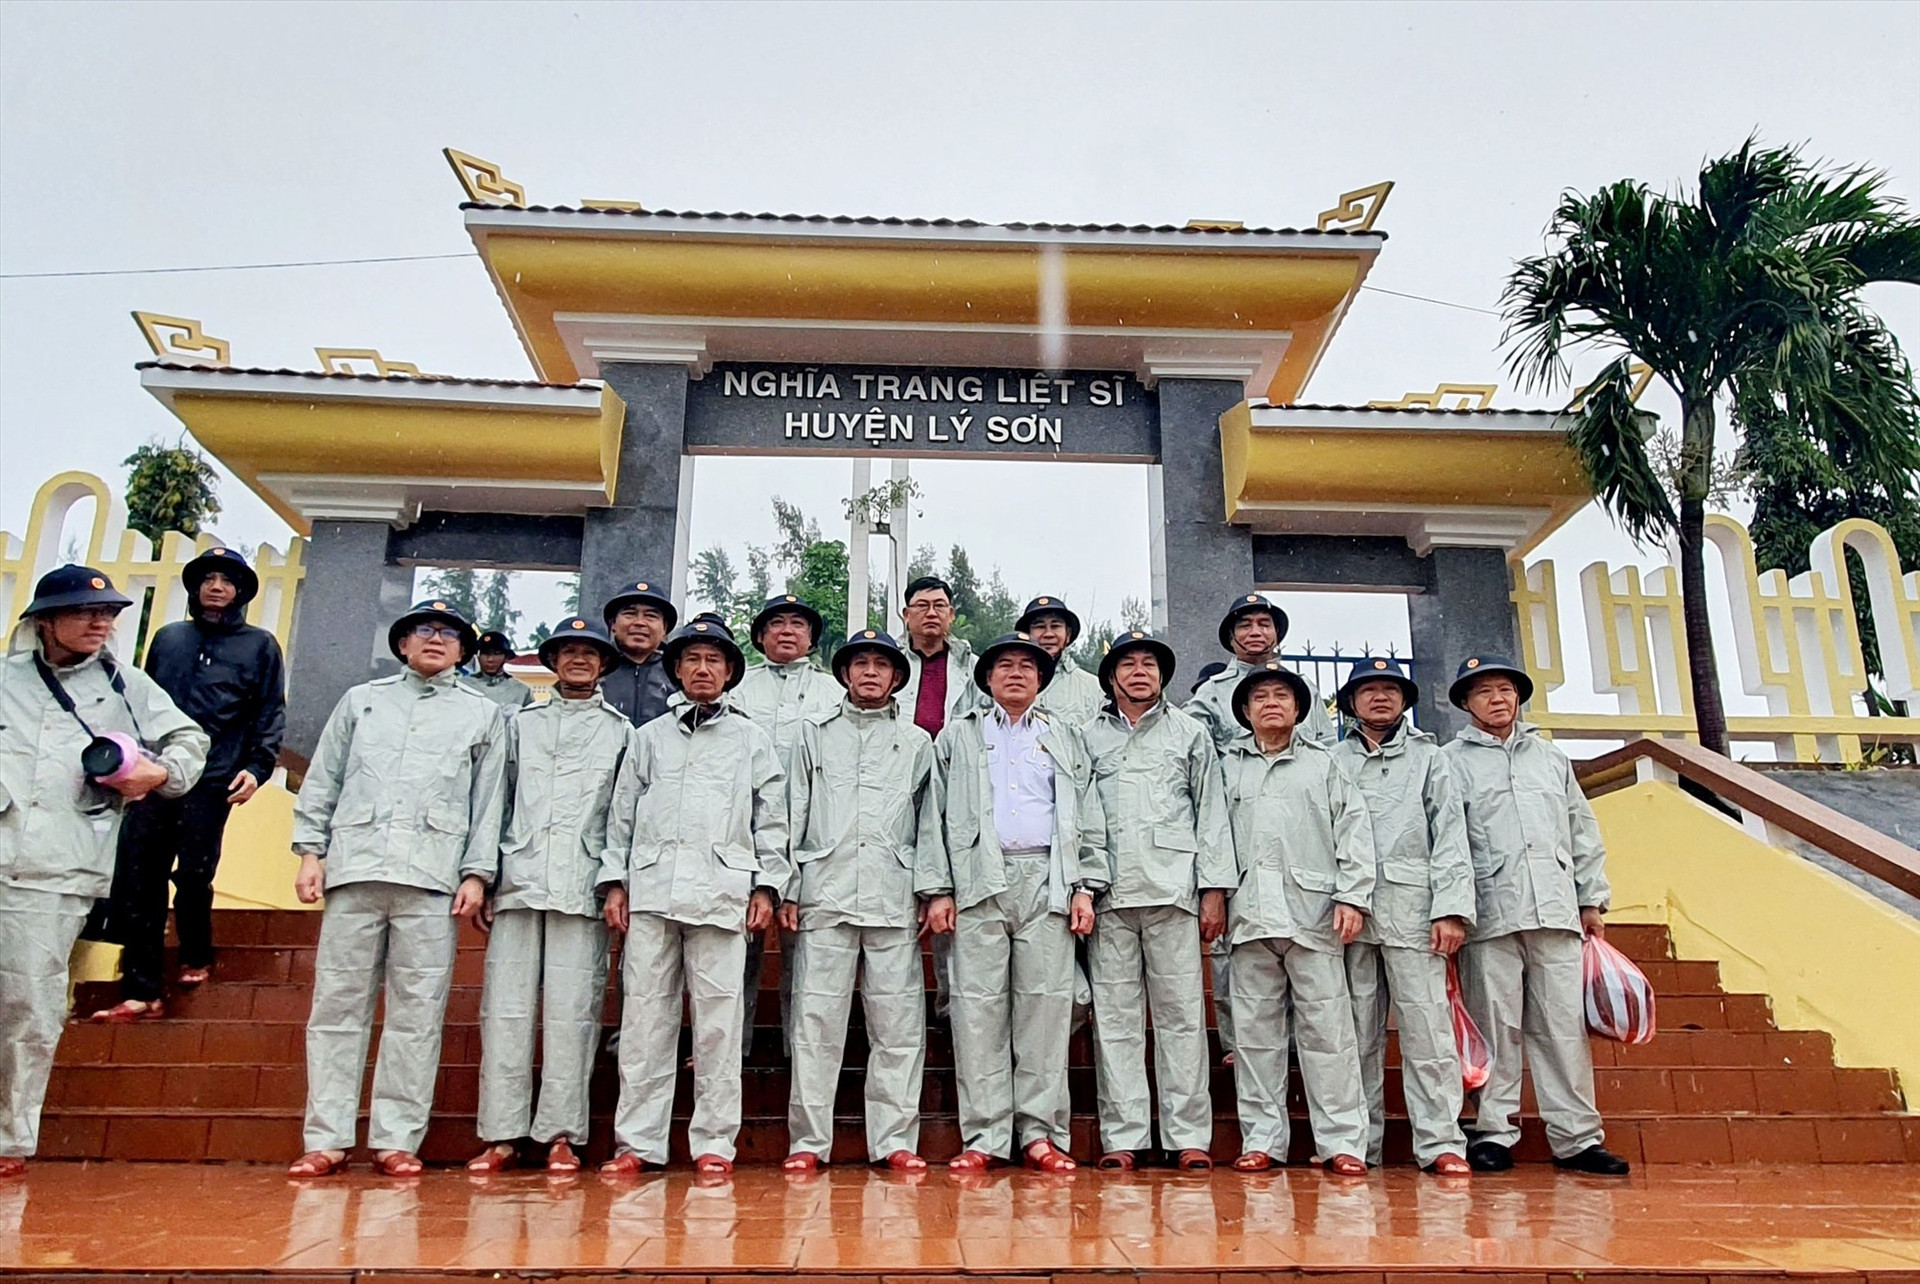 Đoàn công tác của Bộ Tư lệnh Vùng 3 Hải quân chụp ảnh lưu niệm tại Nghĩa trang Liệt sĩ huyện Lý Sơn.